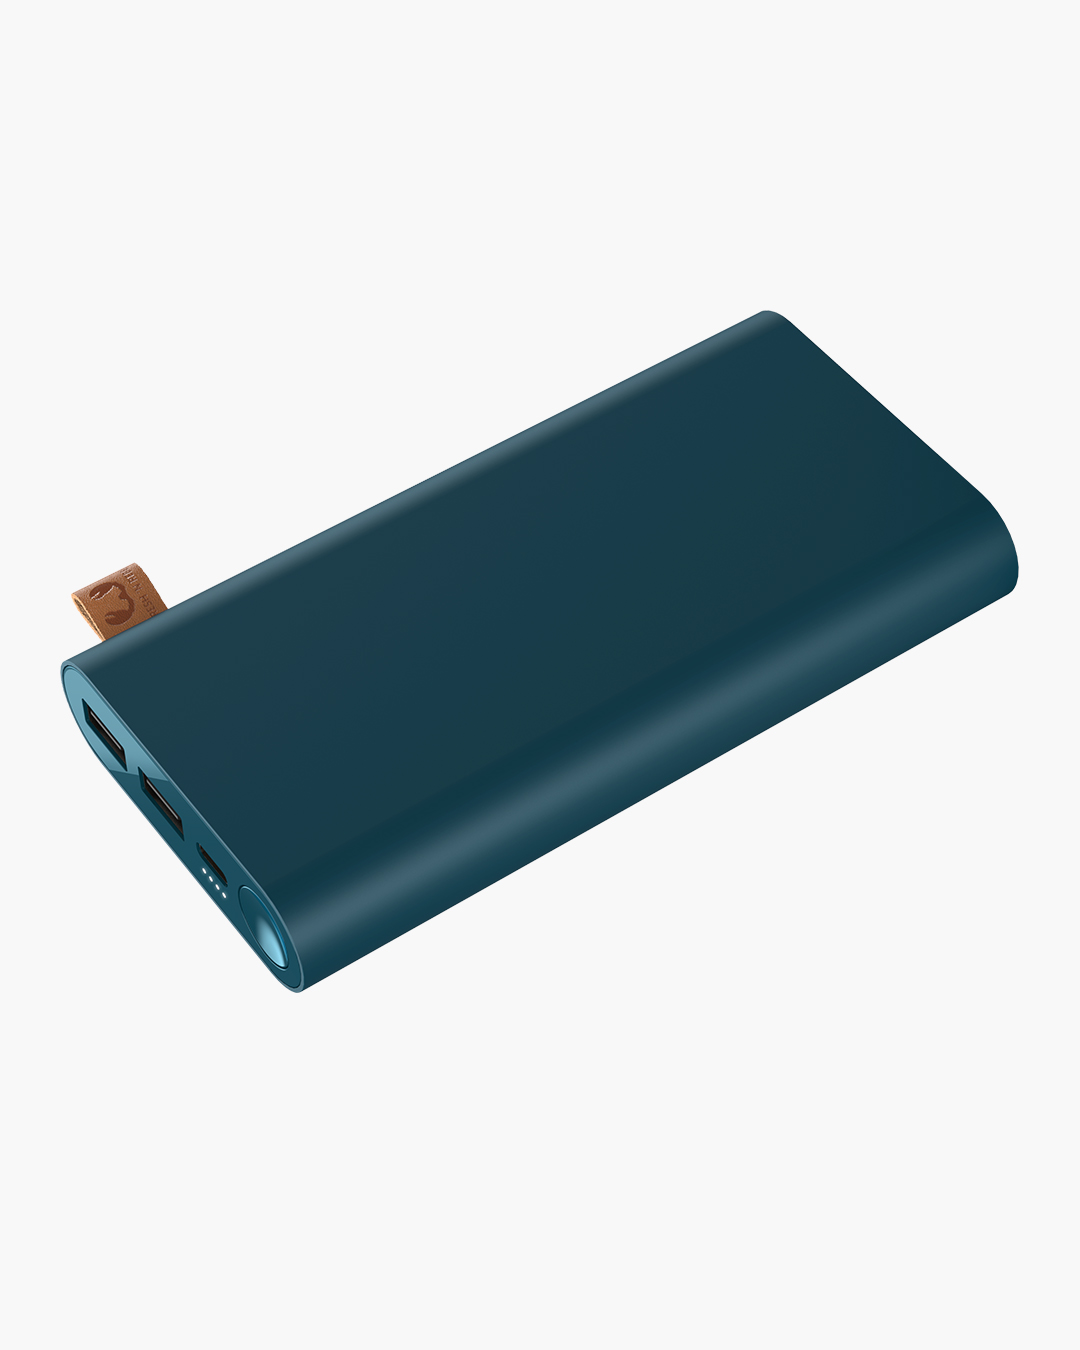 Fresh 'n Rebel - Powerbank 18000 mAh USB-C - Petrol Blue